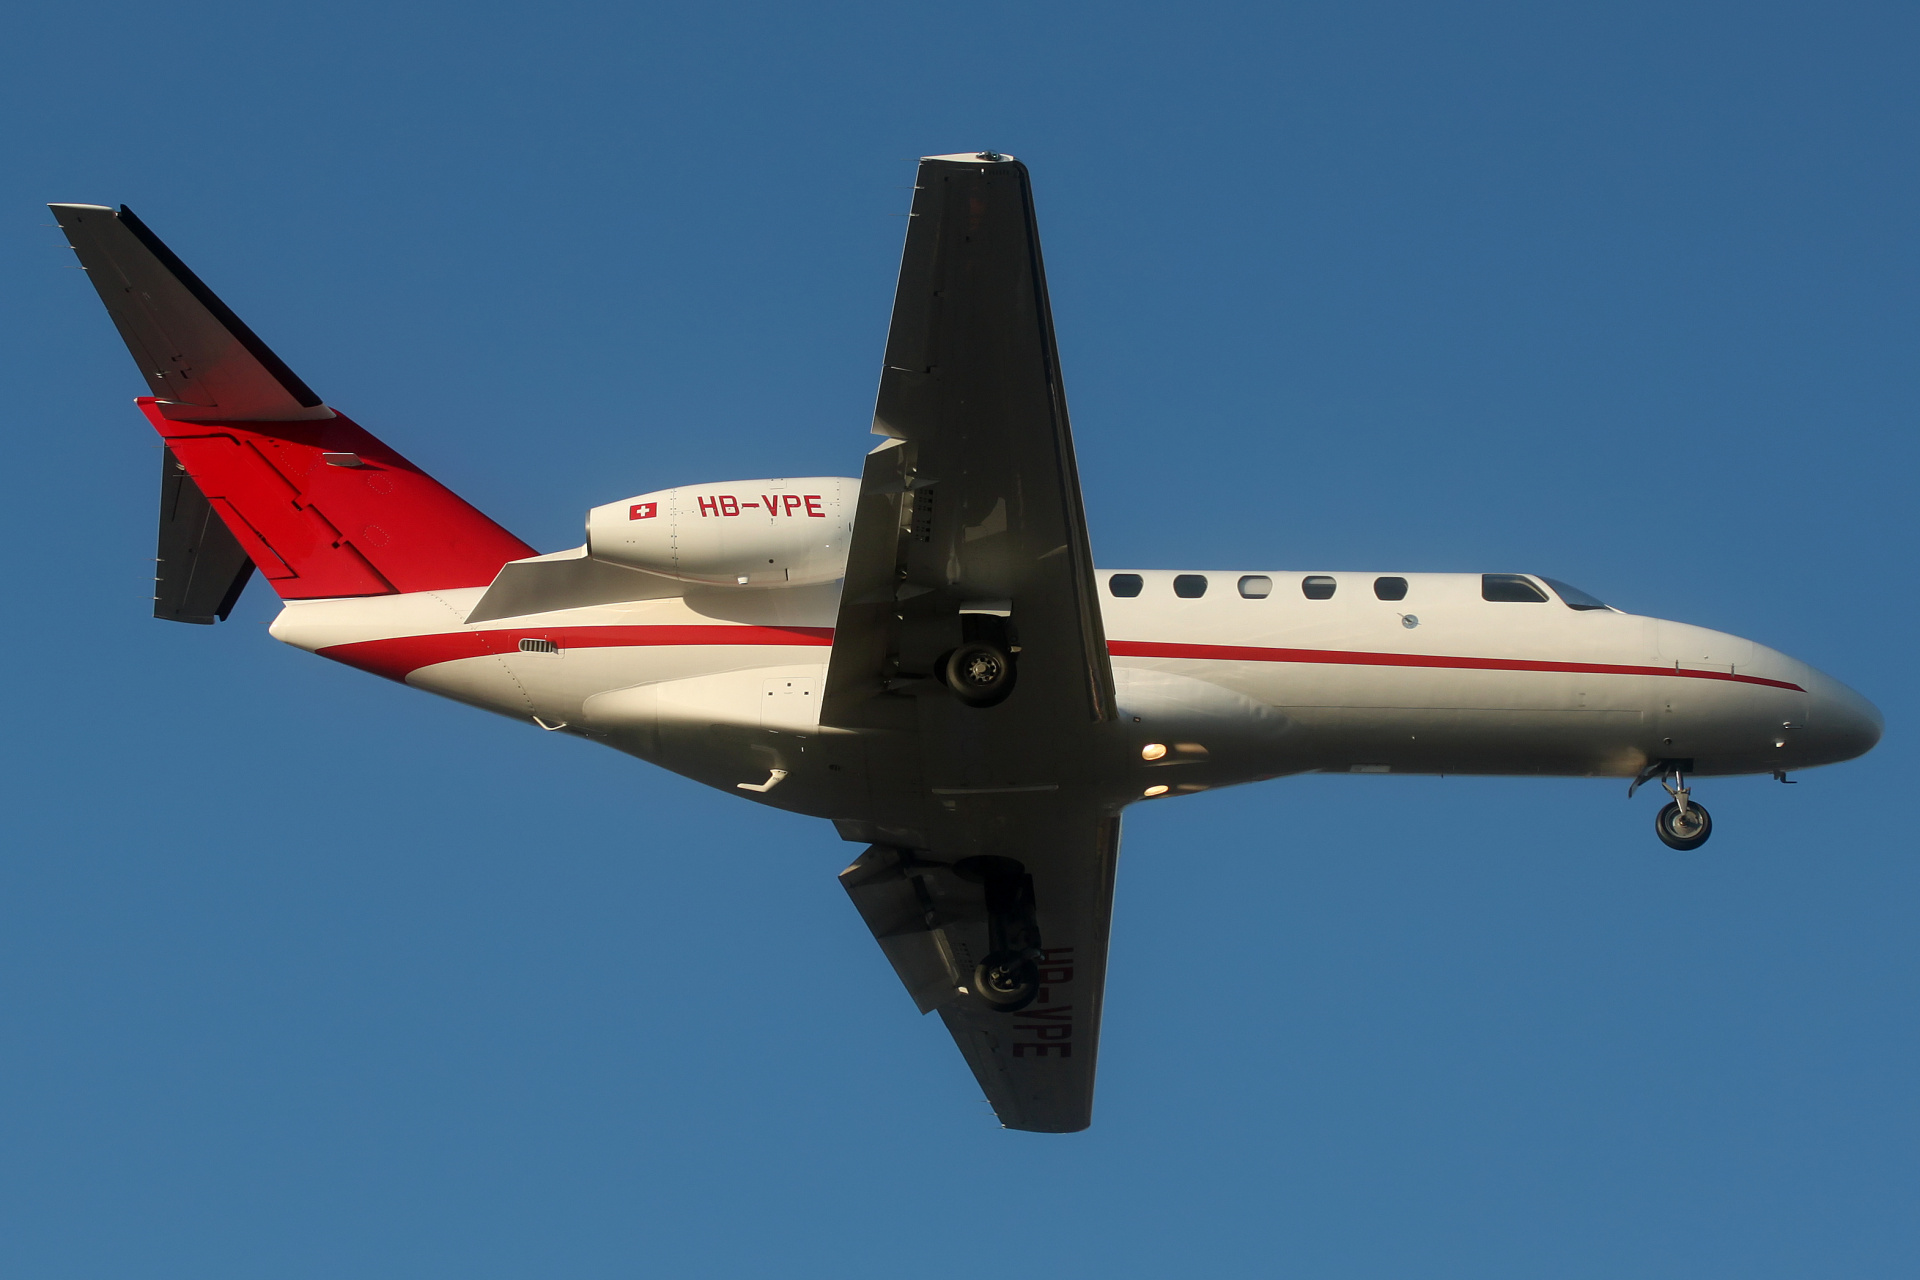 HB-VPE, ExecuJet Aviation (Aircraft » EPWA Spotting » Cessna 525 (CitationJet) and revisions » 525A Citation CJ2 (CitationJet 2))